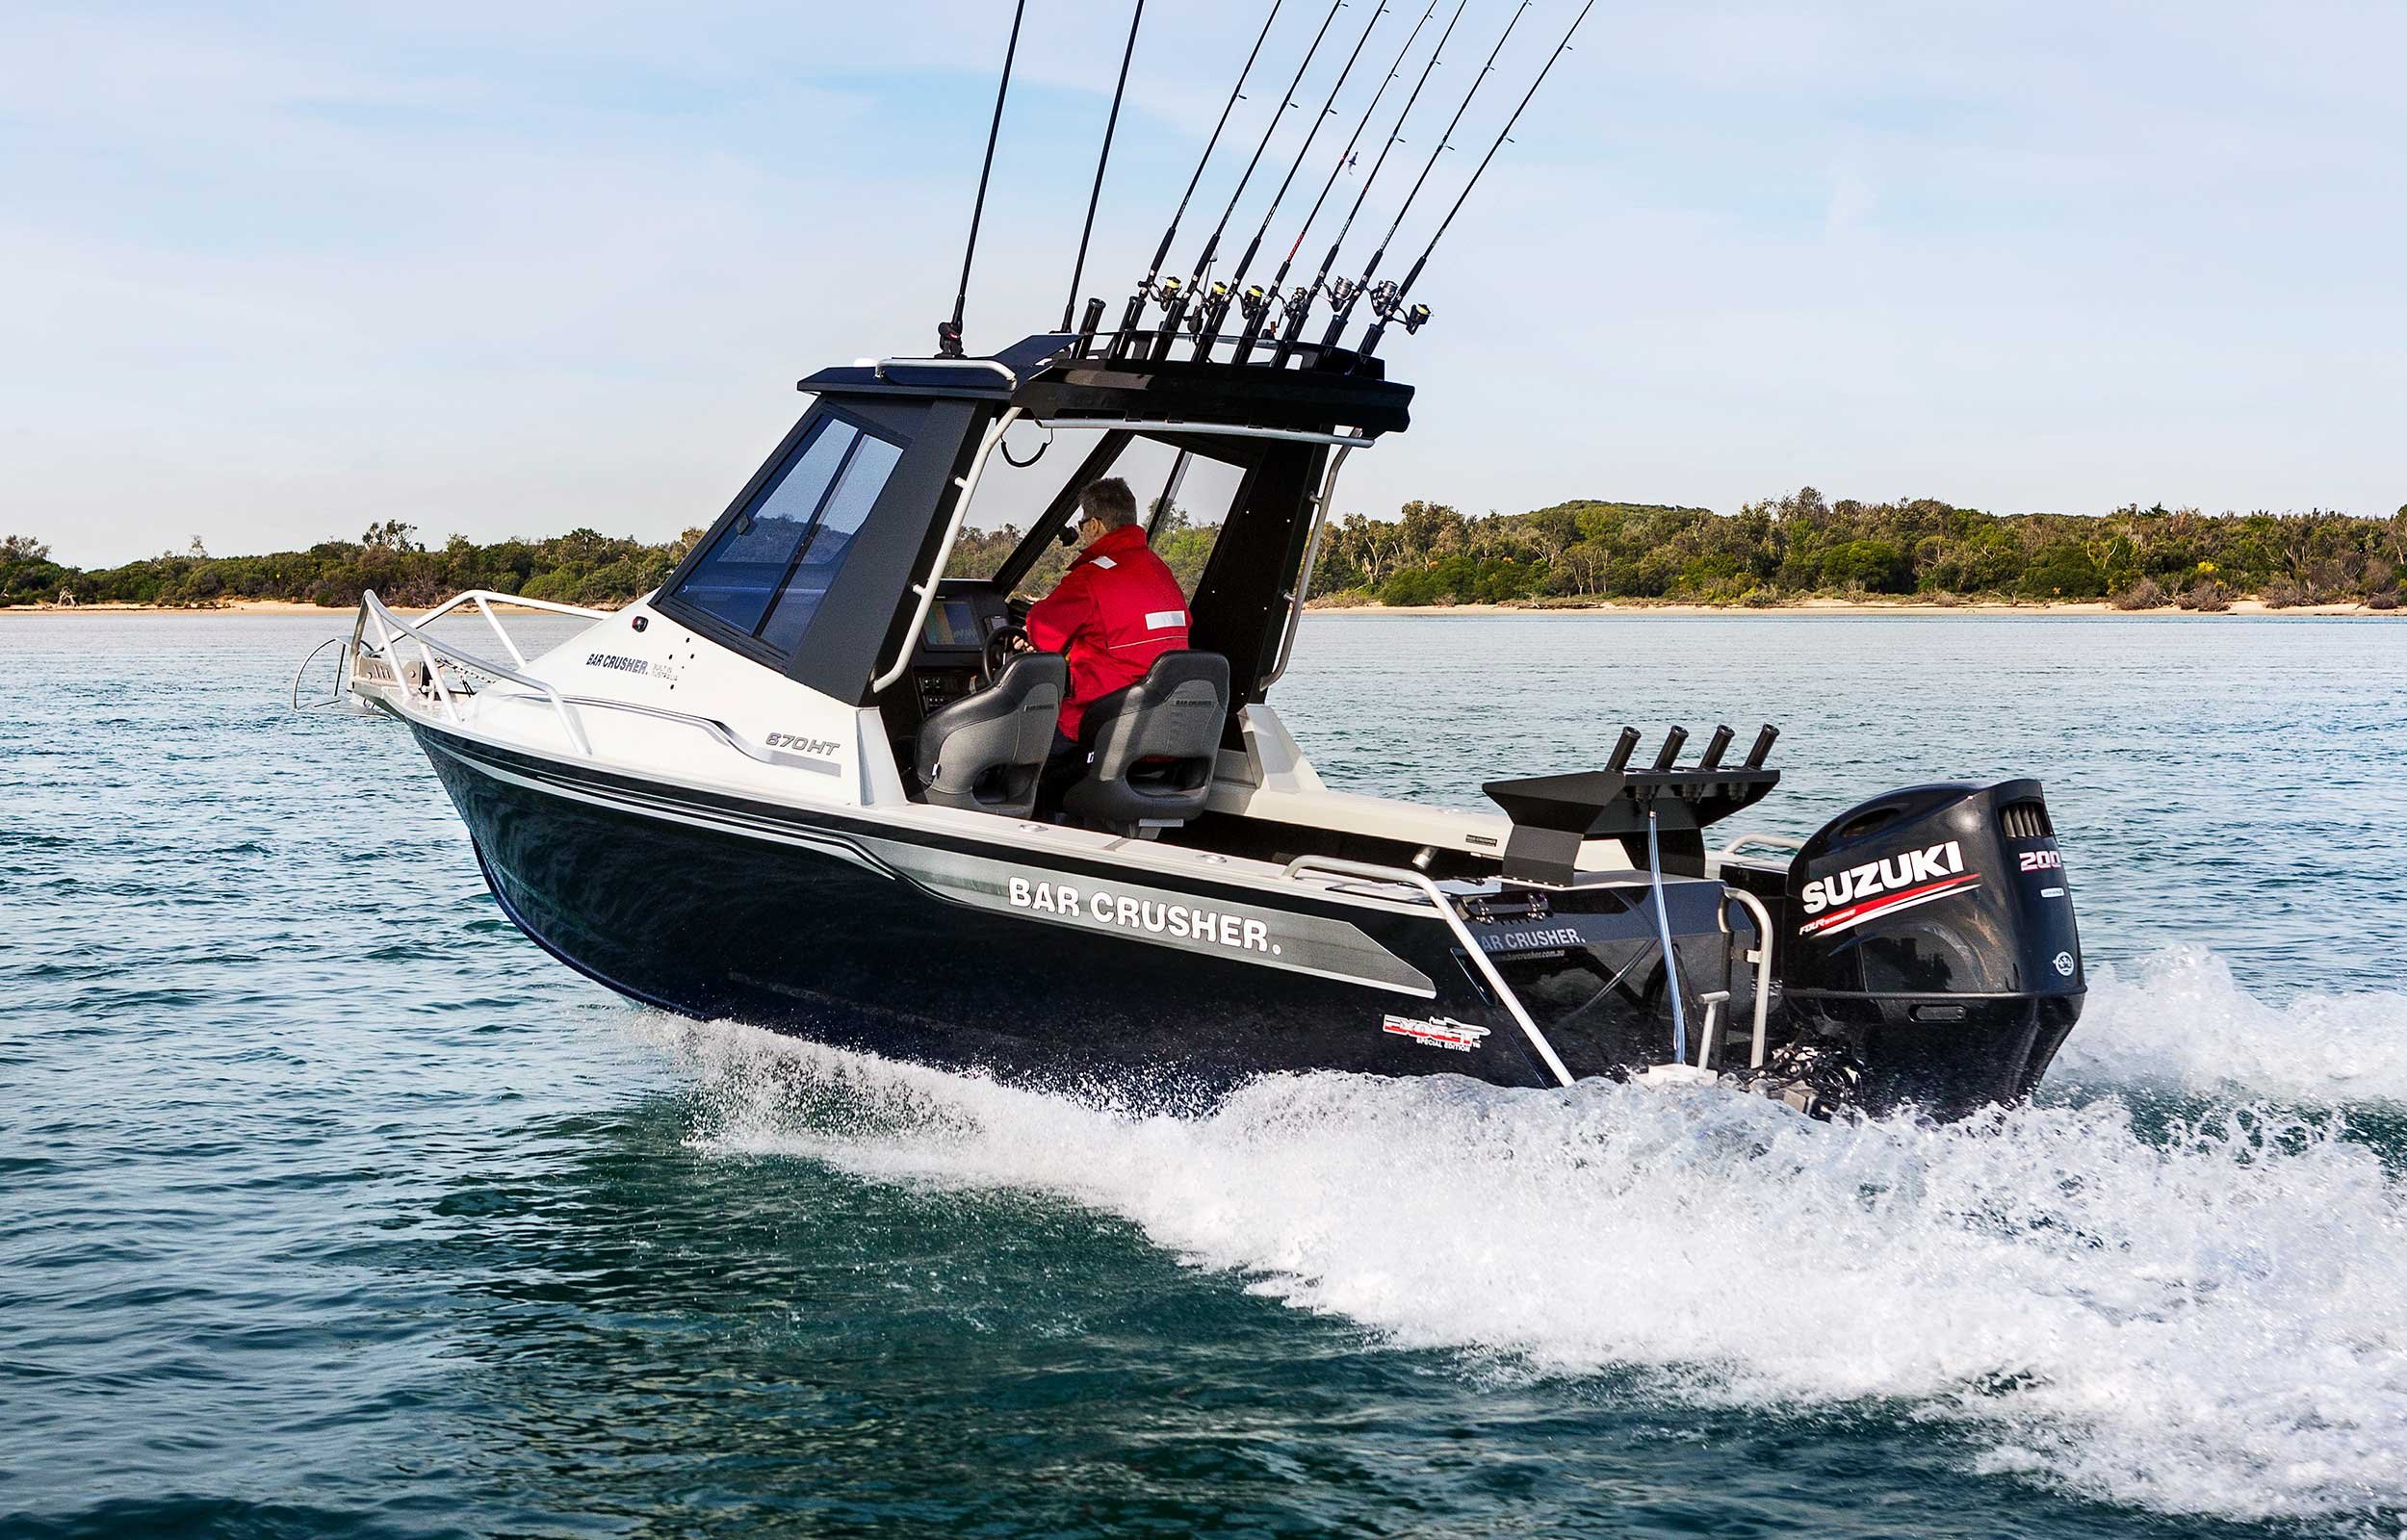 models-bar-crusher-670ht-exocet-plate-aluminium-fishing-boat-web-1